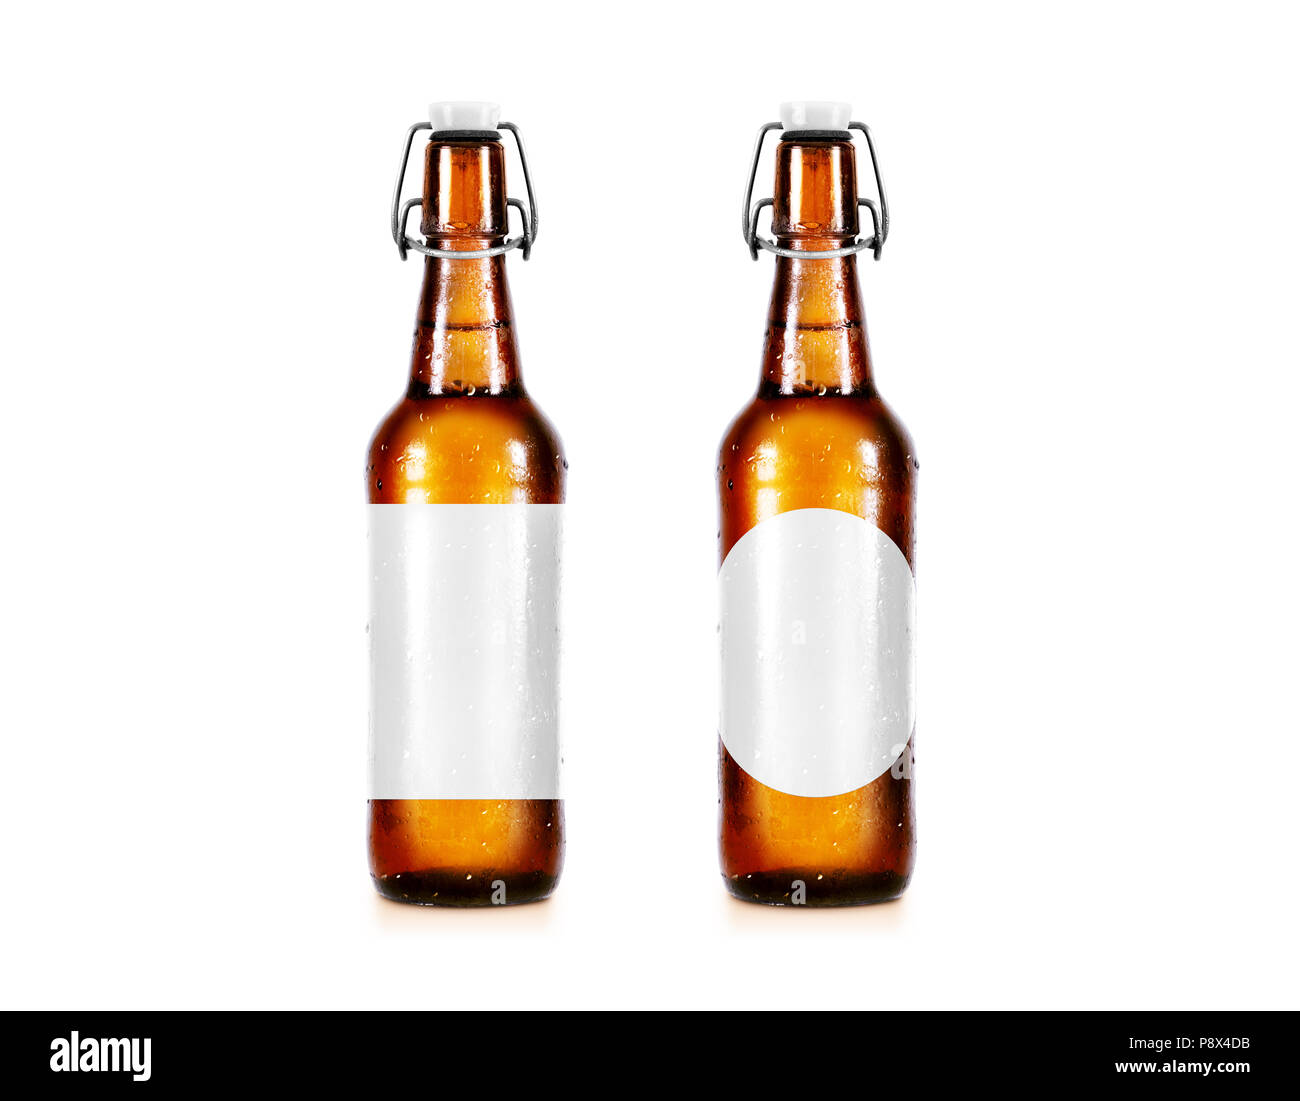 Leere Bierflasche Mockup Ohne Label Stand Isoliert Klar Alkohol Trinken Botle Mock Up Mit Freistellungspfaden Kalte Nass Bier Flasche Vorlage Vor Vi Stockfotografie Alamy